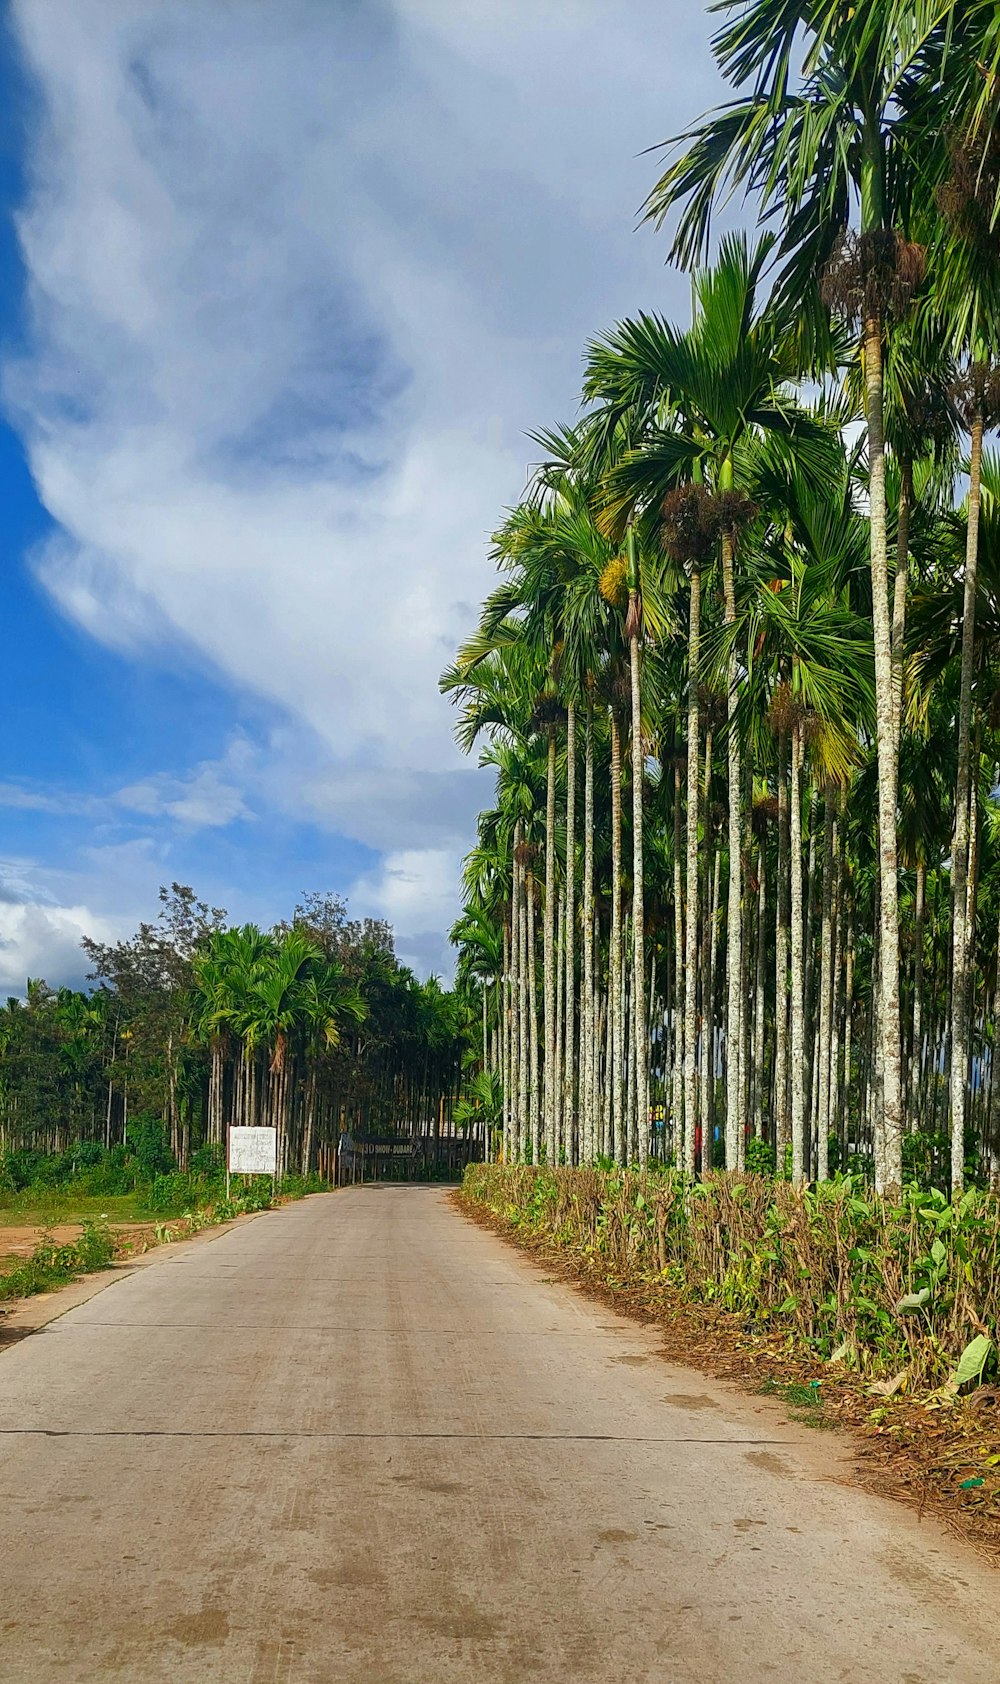 eine unbefestigte Straße mit Palmen auf beiden Seiten